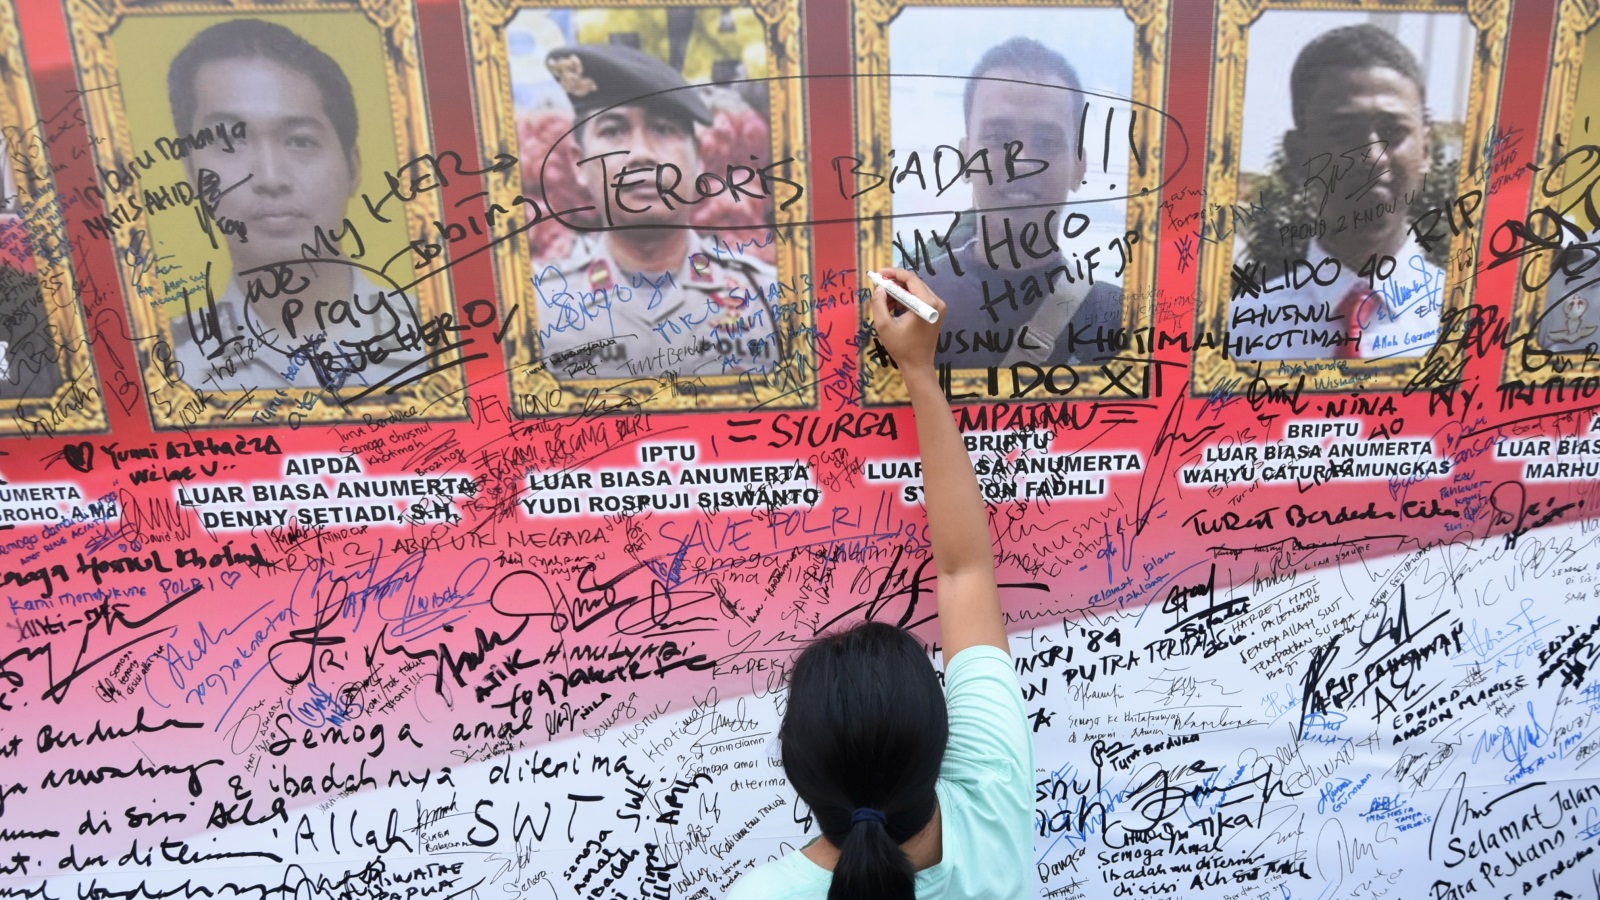 توقيعات تضامن ومواساة على ملصق لضباط الشرطة الذين قتلوا في أحداث شغب في سجن شديد الحراسة في جاوا الغربية (رويترز)